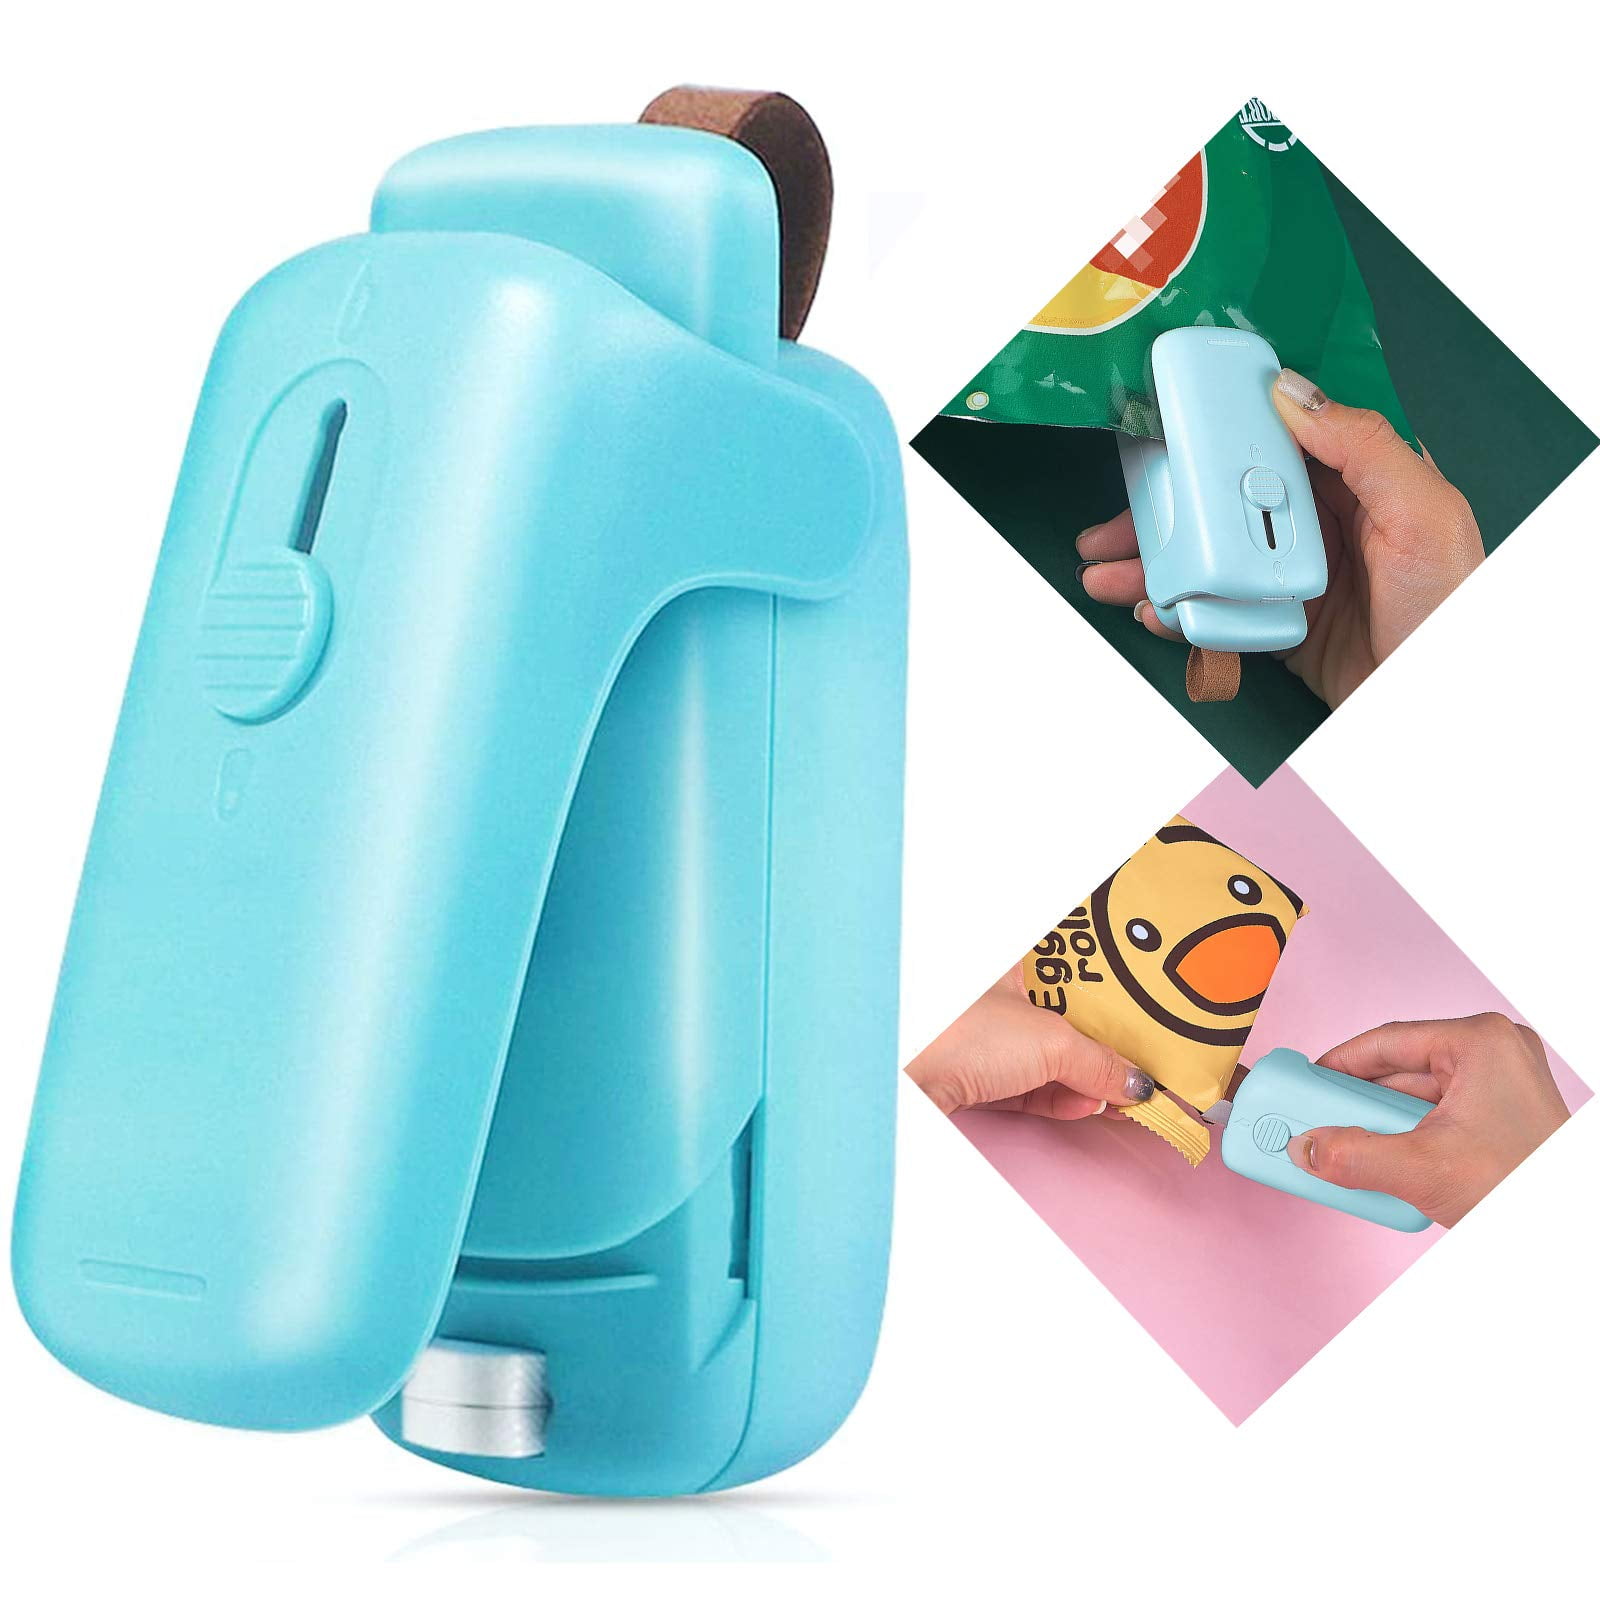 2 PACK Mini Bag Sealer Heat Seal, Handheld Food Sealer Bag Resealer for  Food Storage, Portable Smart Heat Sealer Machine with 45” Power Cable for  Chip